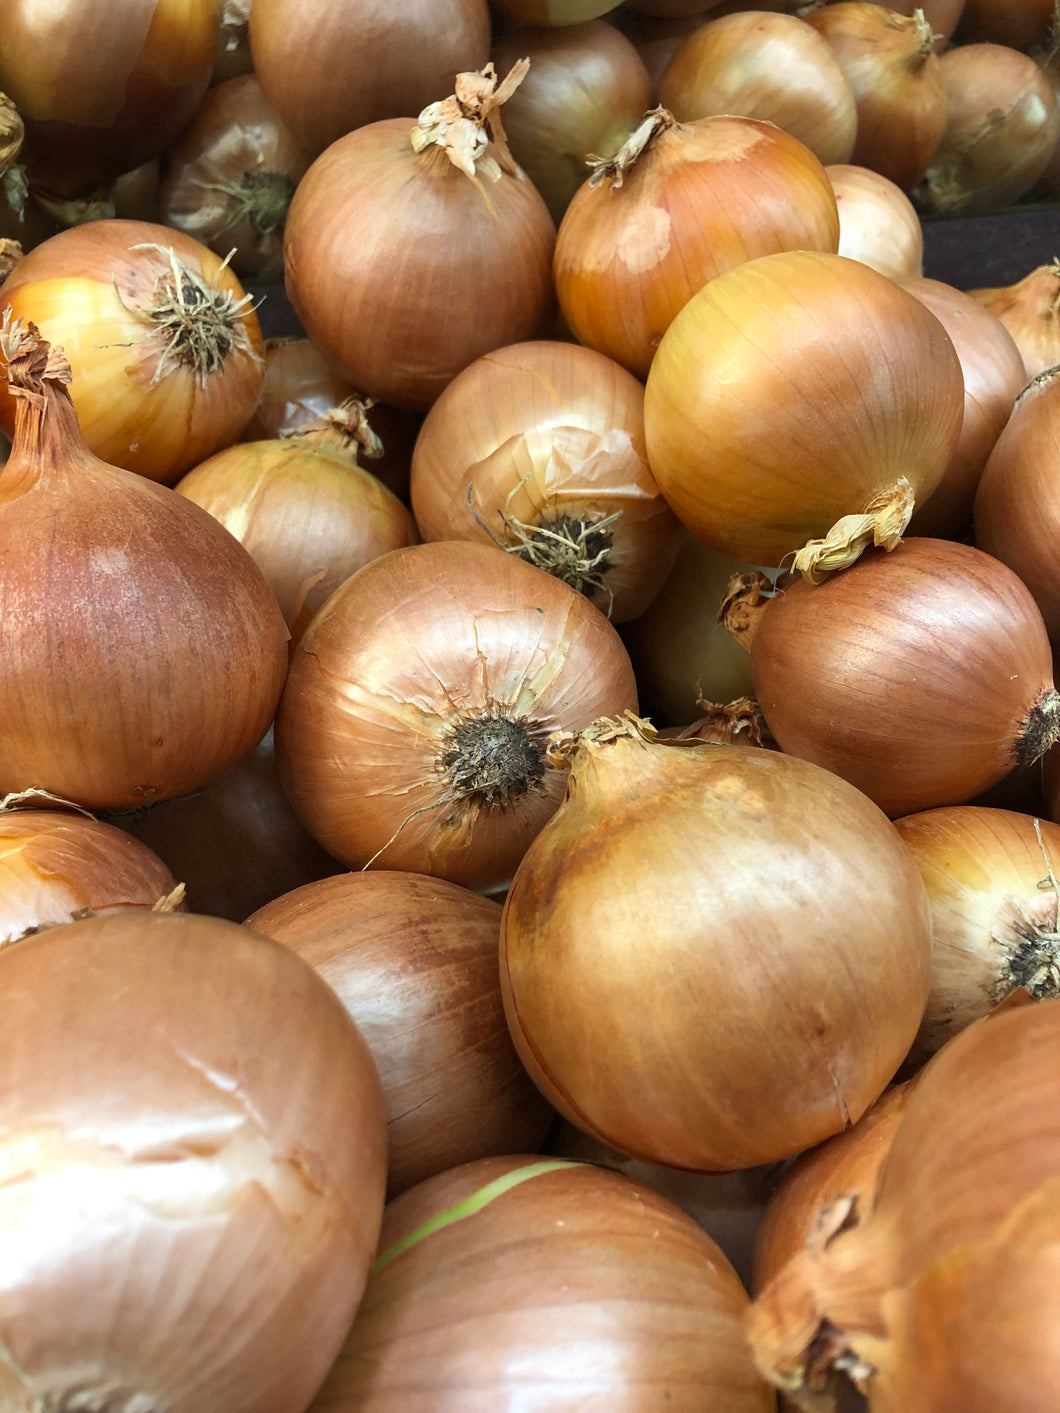 Onion Brown each